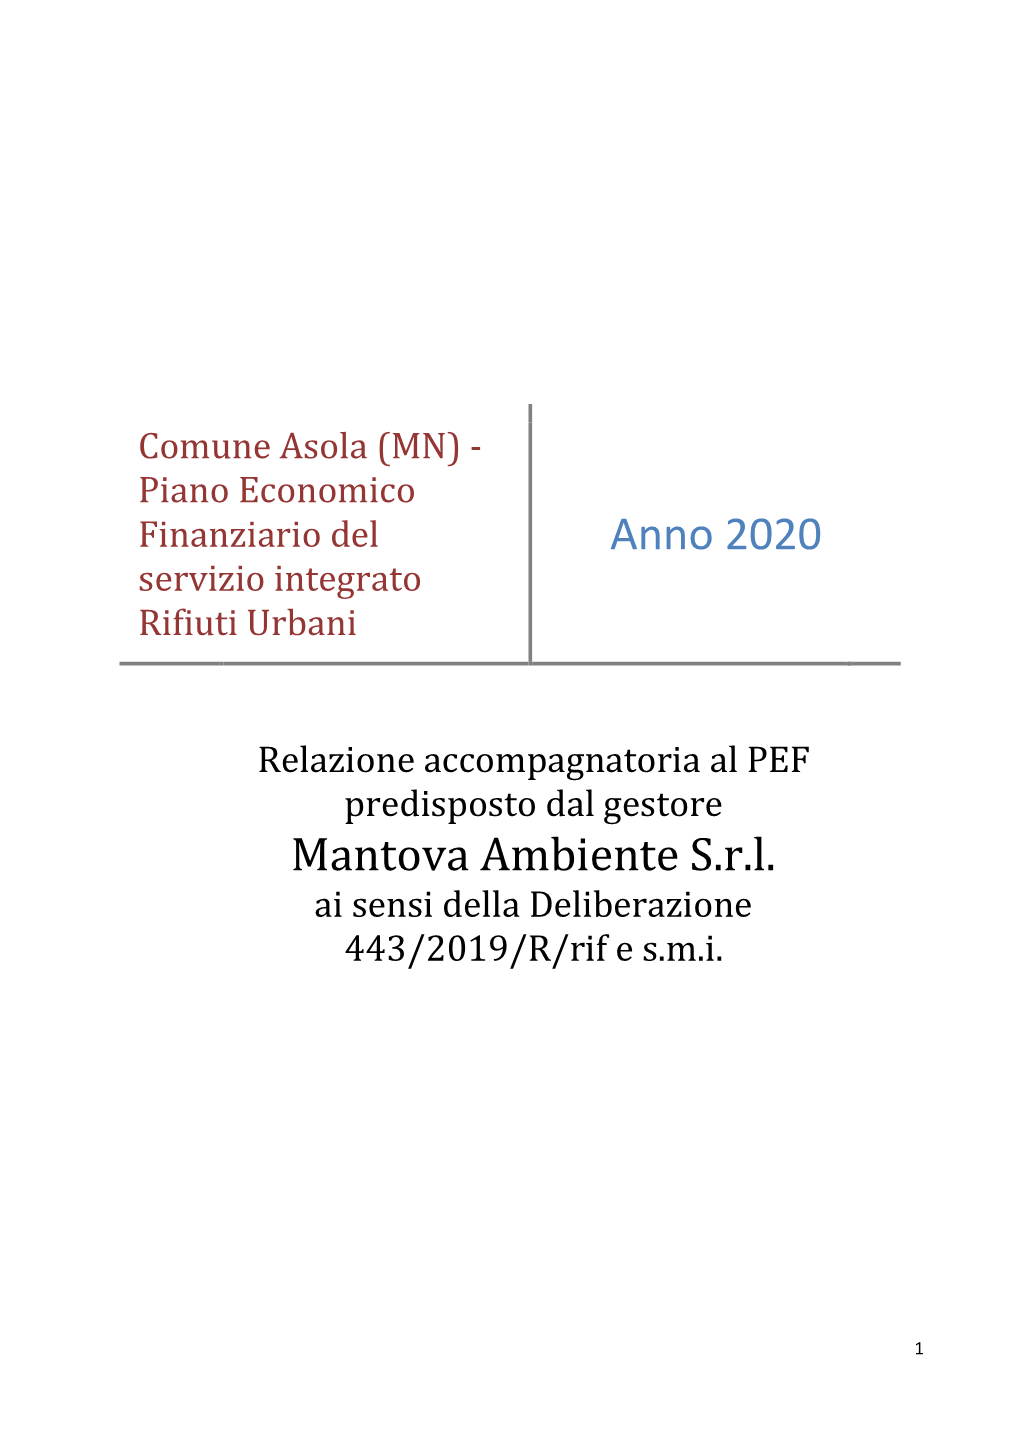 Anno 2020 Mantova Ambiente S.R.L